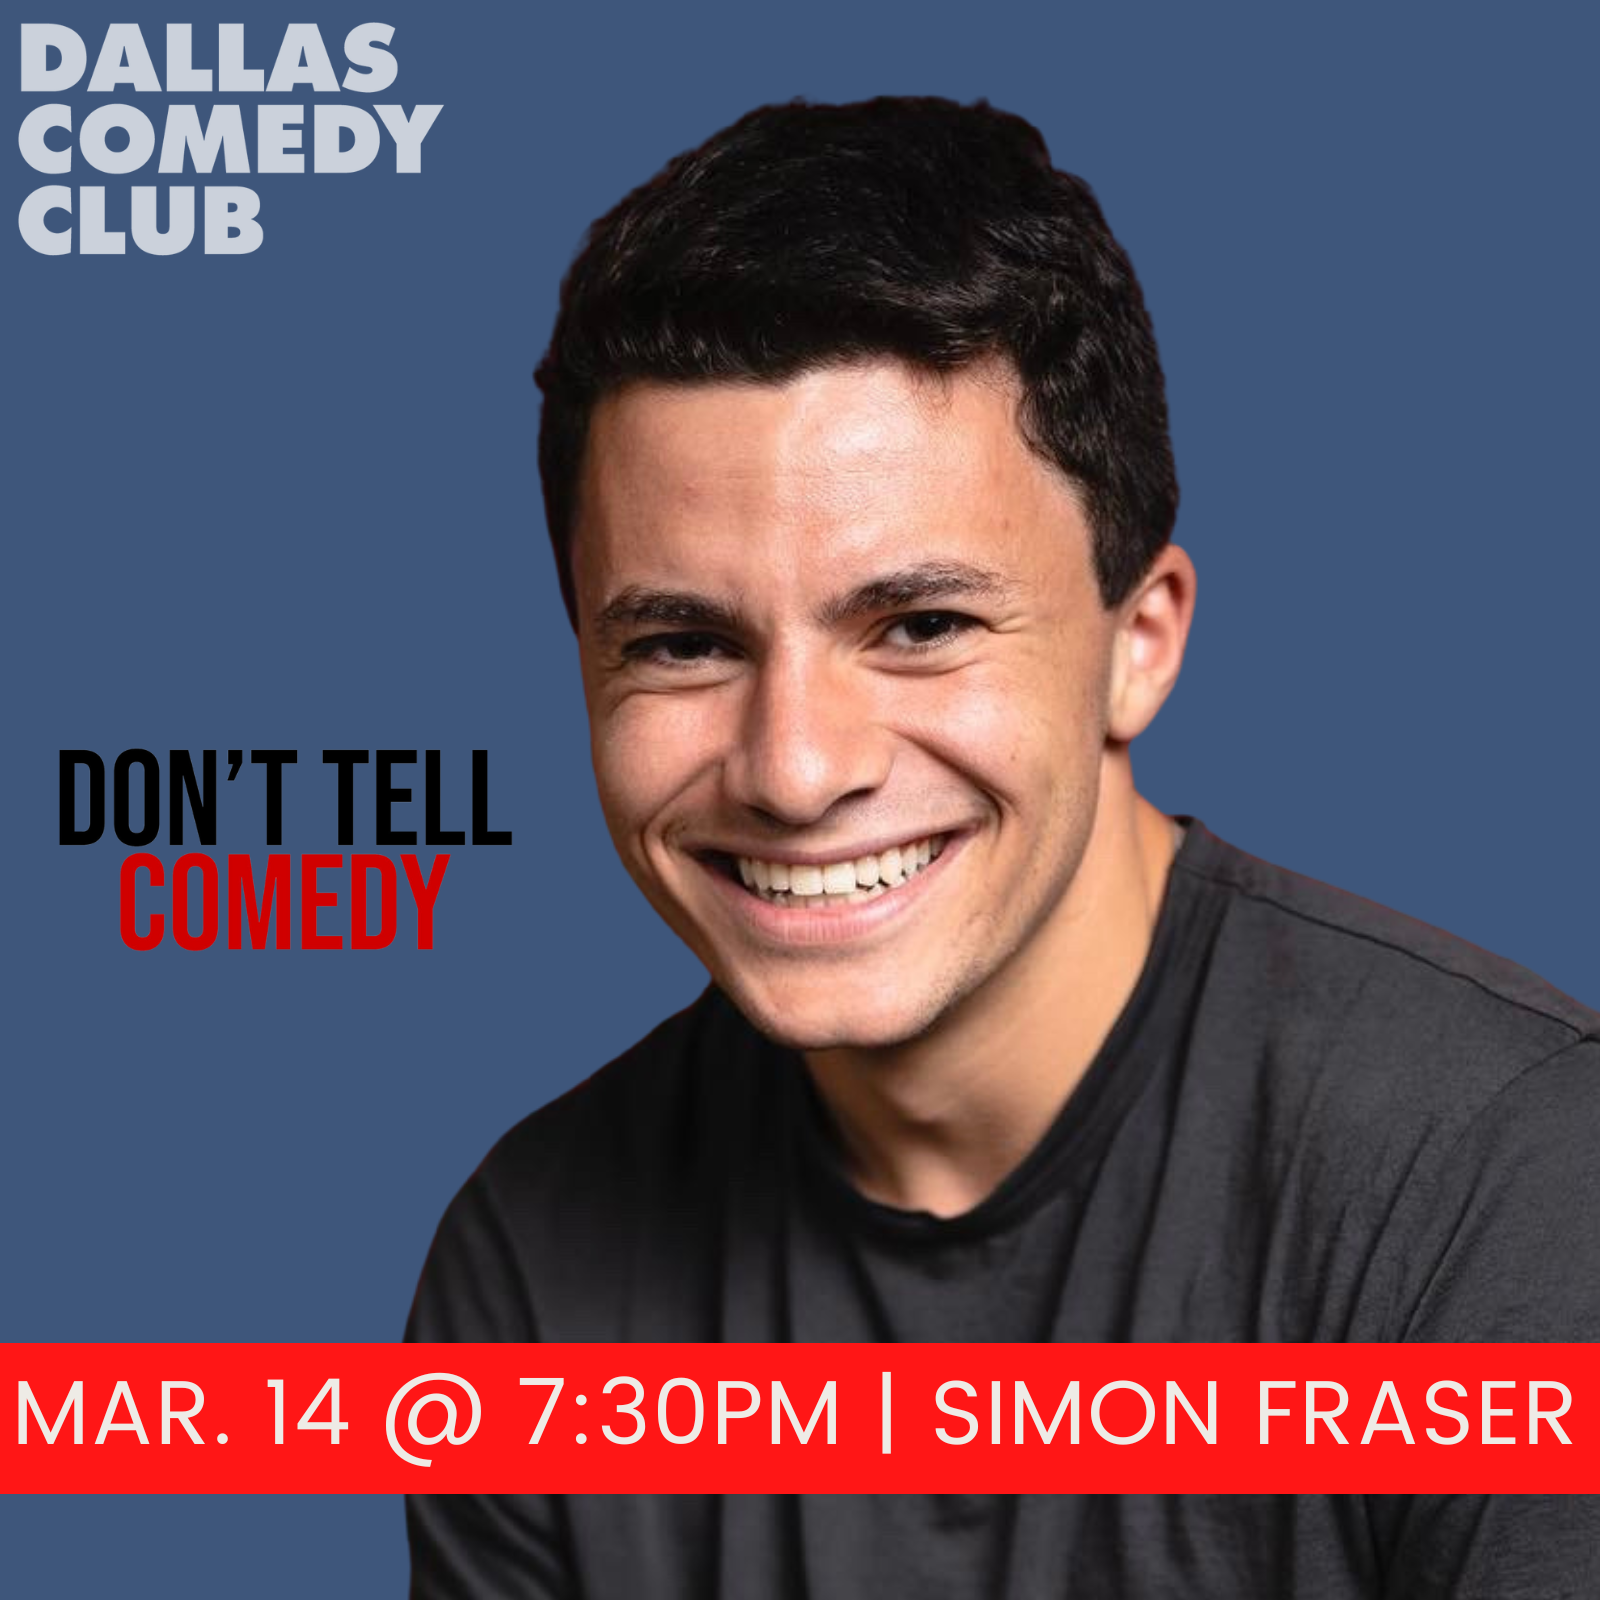 Simon Fraser at Dallas Comedy Club